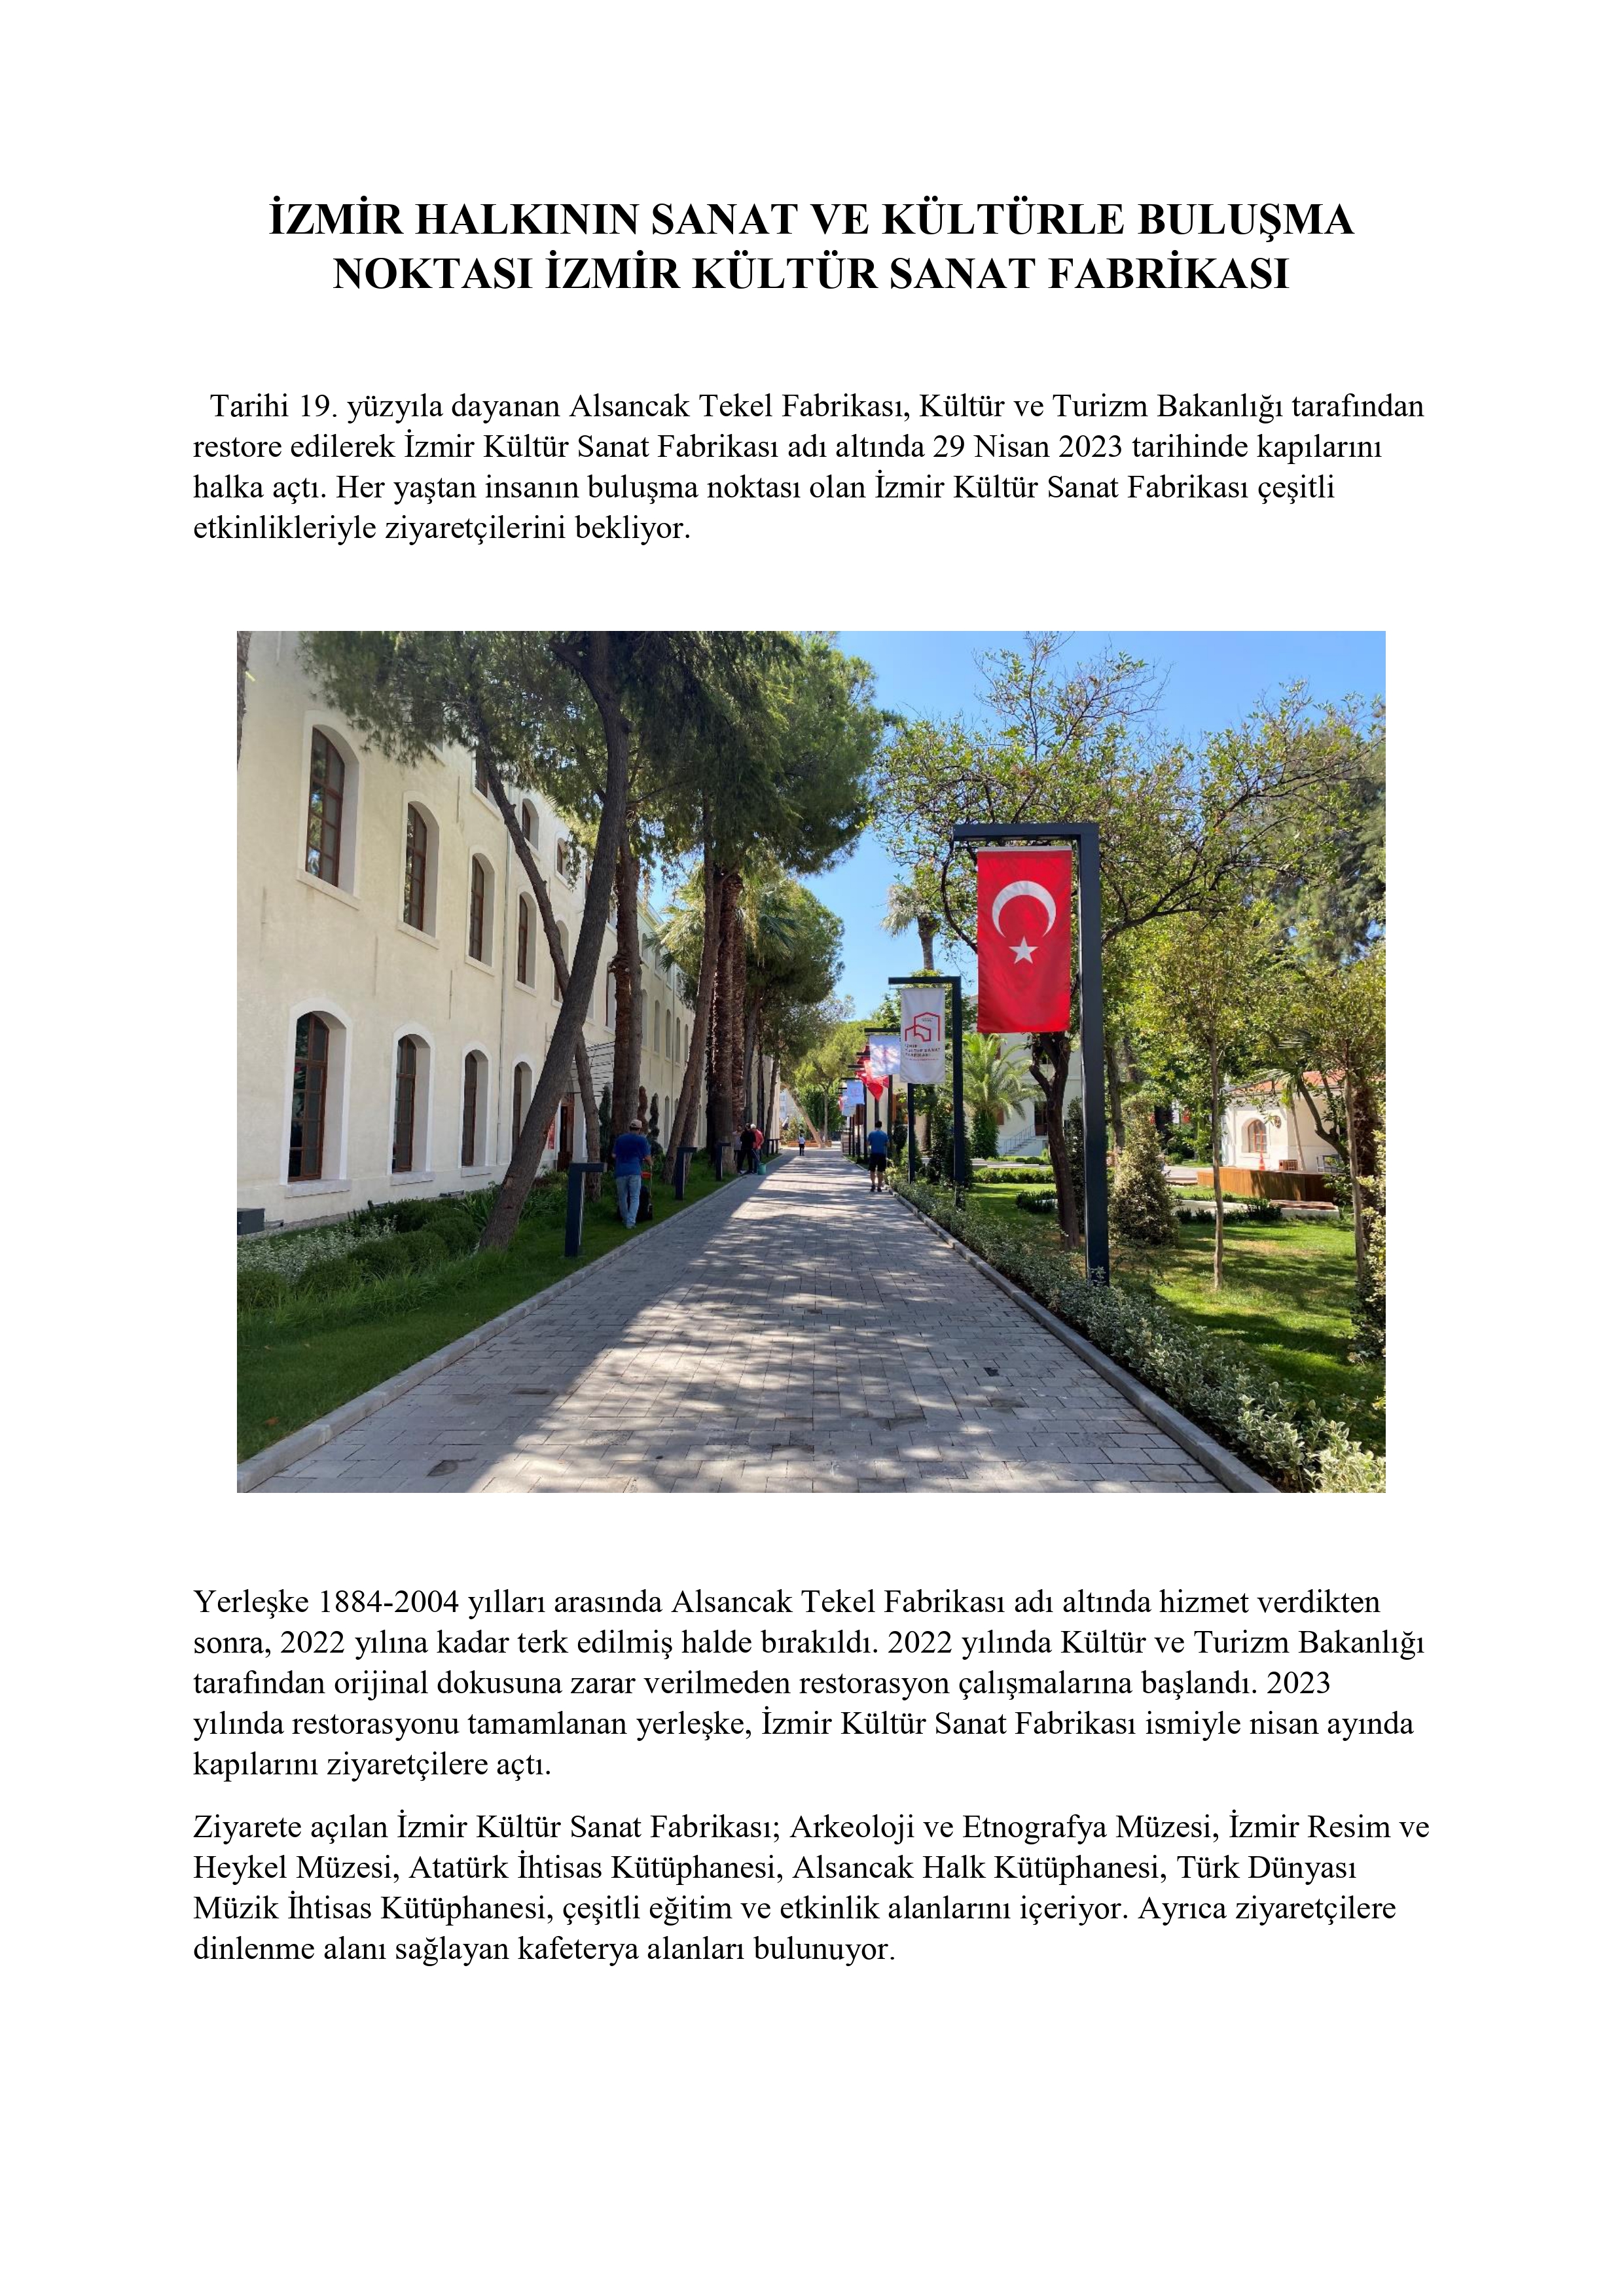 İzmir Kültür Sanat Fabrikası_page-0001